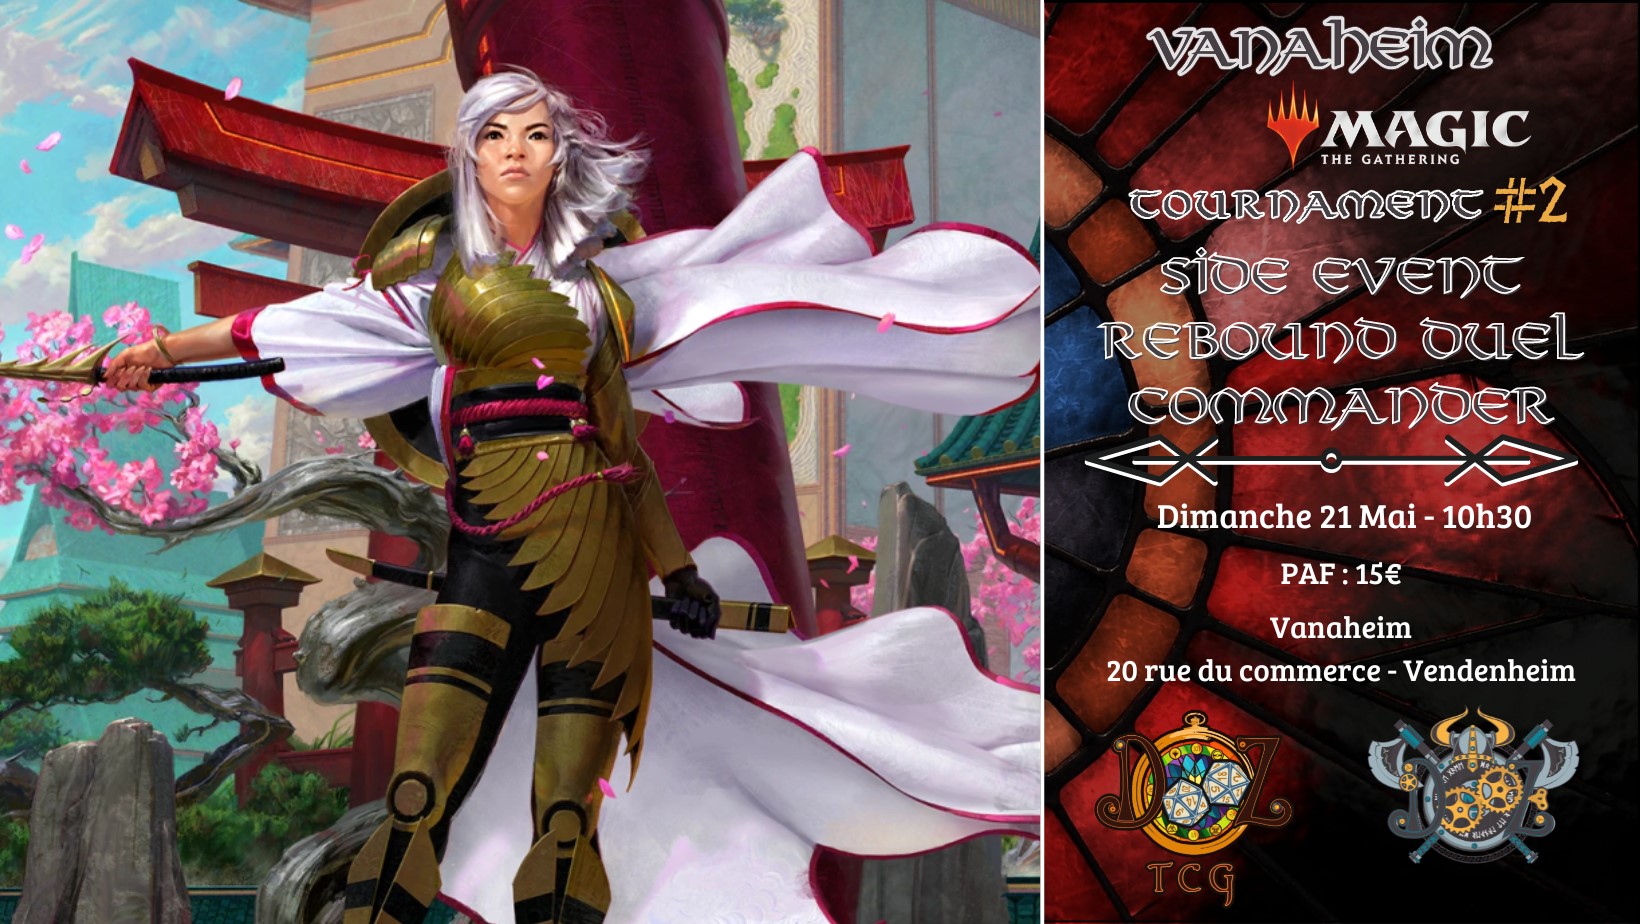 Vanaheim Magic Tournament #2 - Side Event Rebound Duel Commander